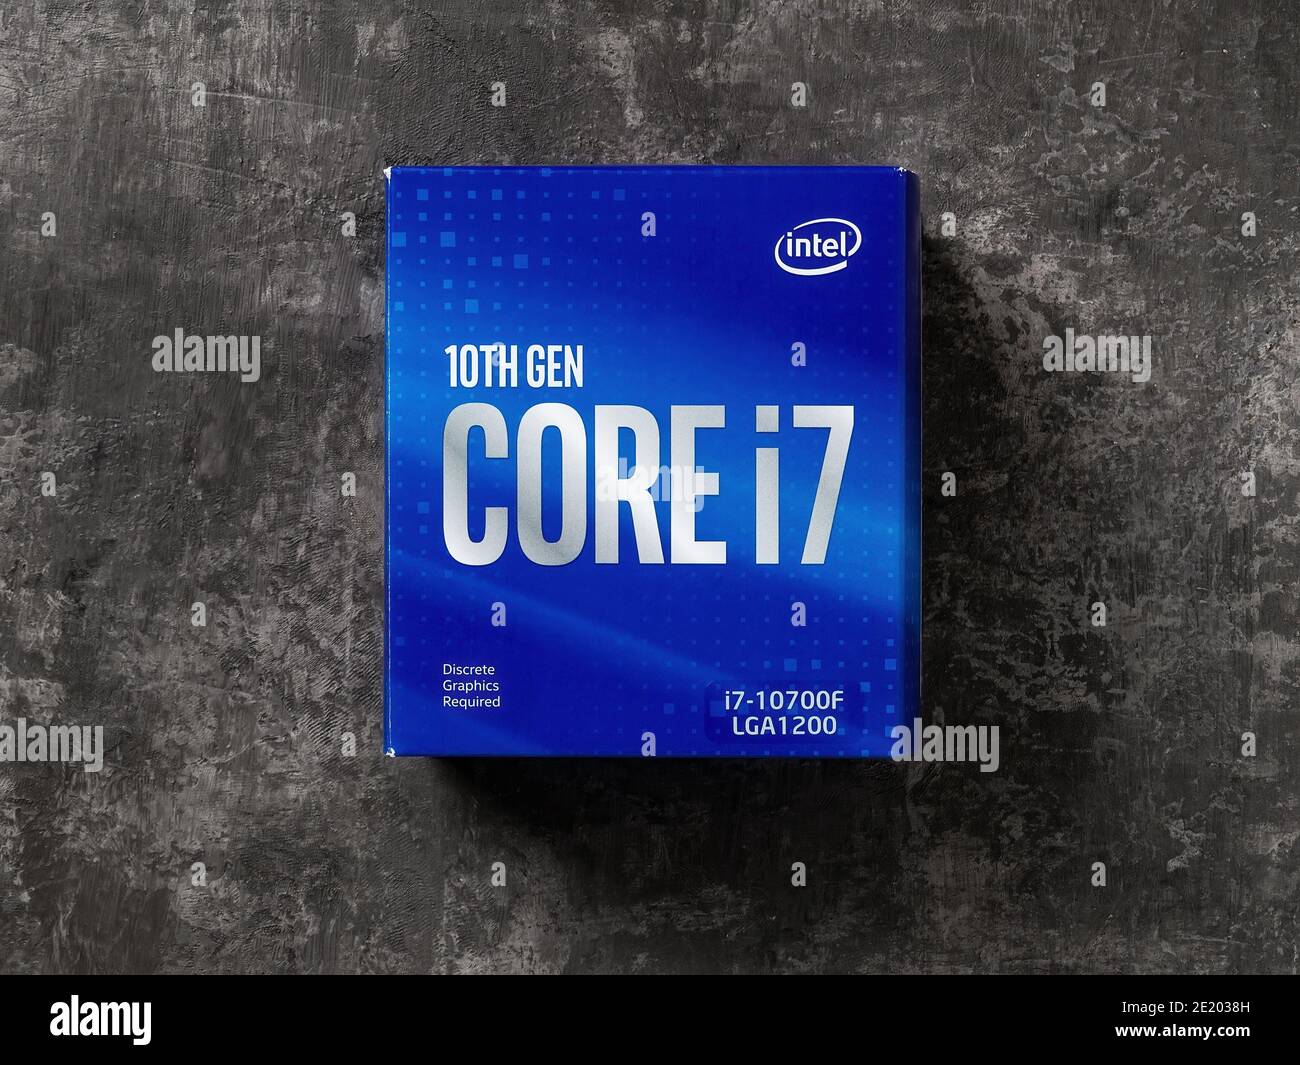 Varna, Bulgarie, 09 janvier 2021. Processeur Intel Core i7-10700F : boîte  bleue sur fond sombre. Processeur Intel de 10e génération. Matériel  informatique de bureau moderne Photo Stock - Alamy